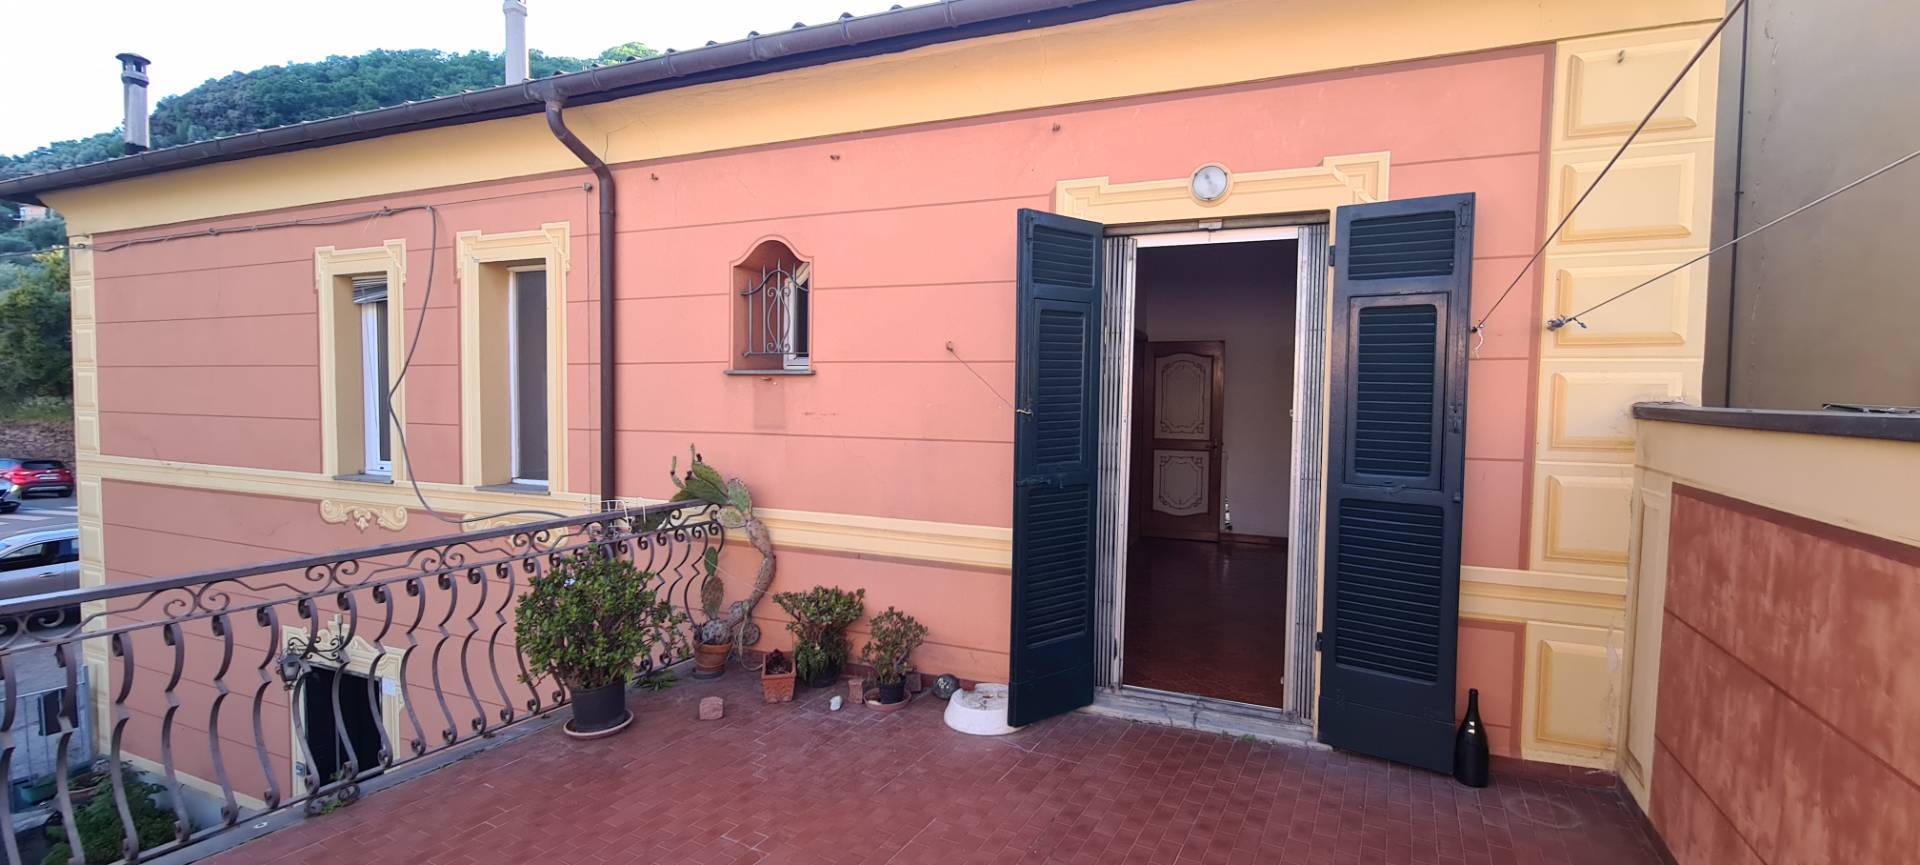 Villa Bifamiliare in vendita a Chiavari, 10 locali, zona Località: Caperana, prezzo € 320.000 | PortaleAgenzieImmobiliari.it